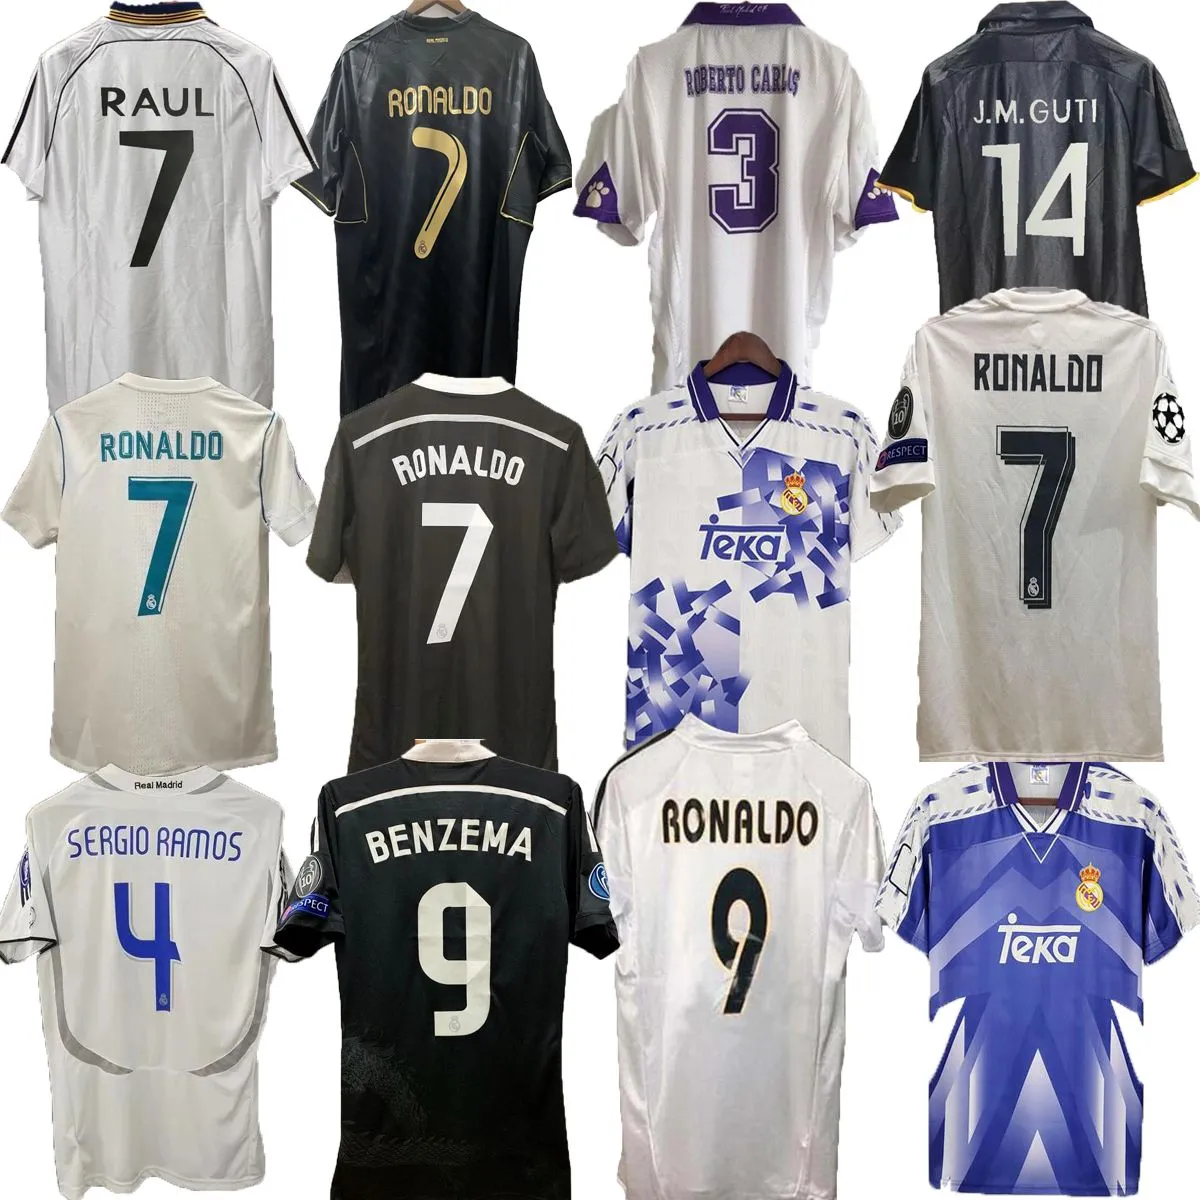 Maglia calcistica Real Madrids Maglie da calcio retrò 2000 2001 Shirt Vintage classico CAMISETA Home White R.Carlos Hierro Redondo Morientes di alta qualità S-2xl